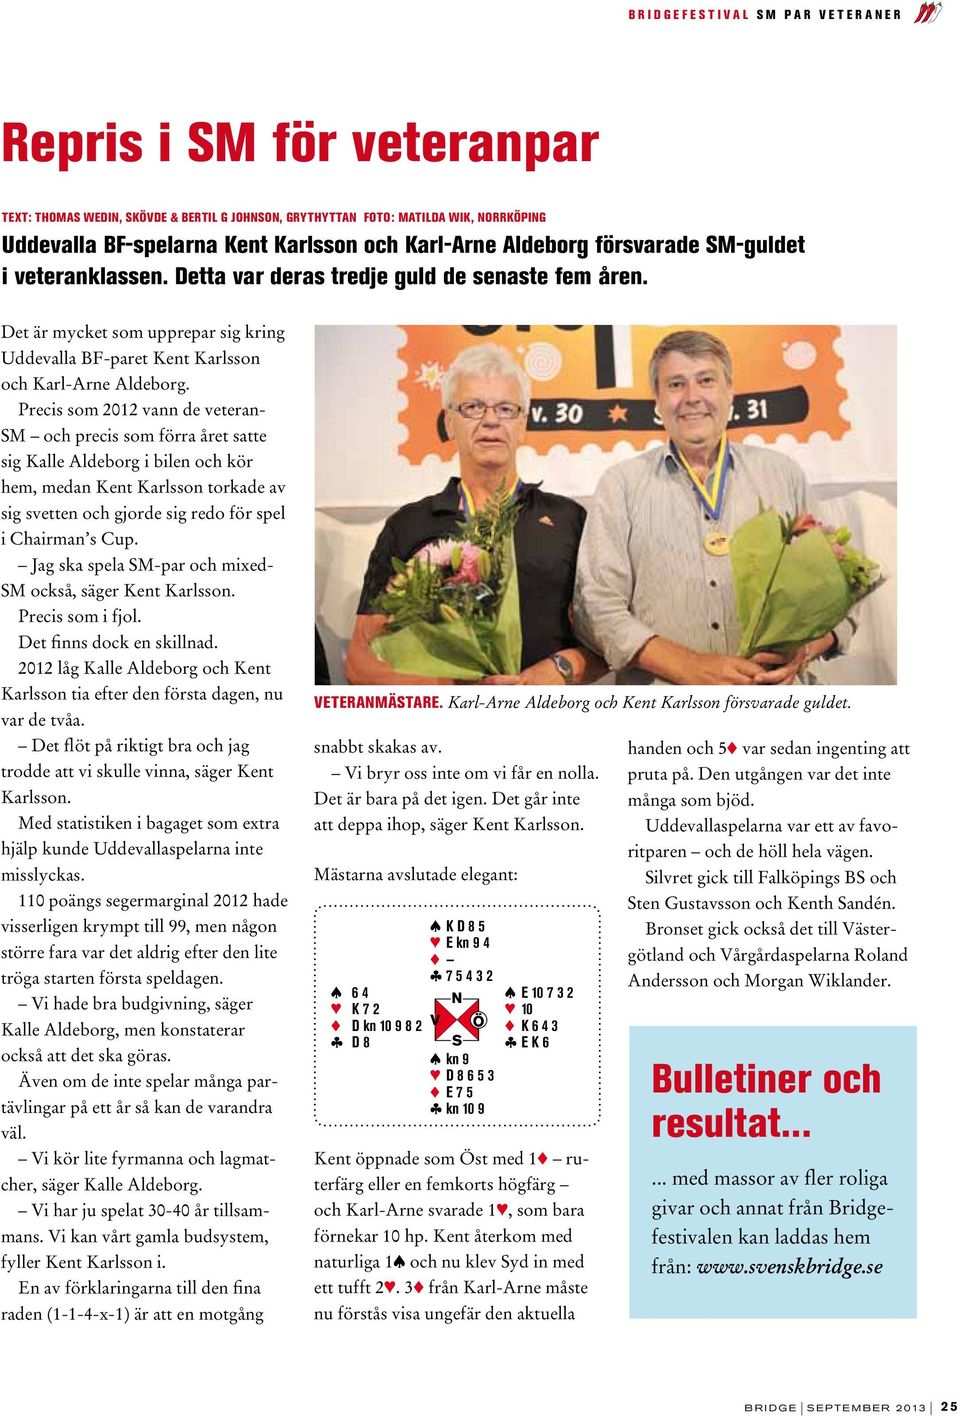 Det är mycket som upprepar sig kring Uddevalla BF-paret Kent Karlsson och Karl-Arne Aldeborg.